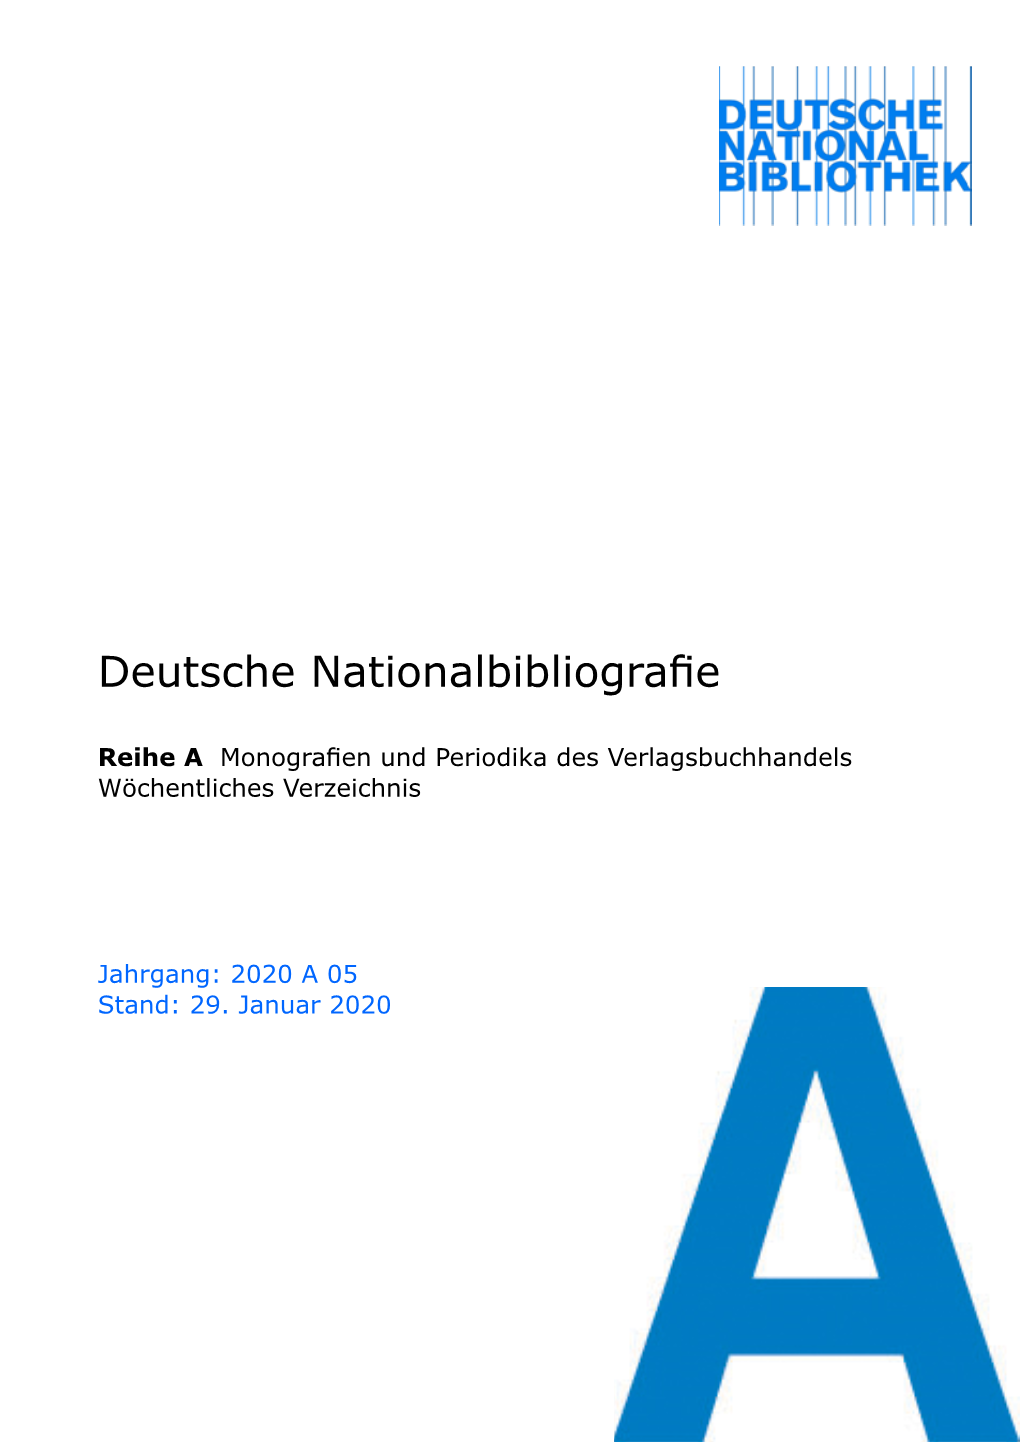 Deutsche Nationalbibliografie 2020 a 05